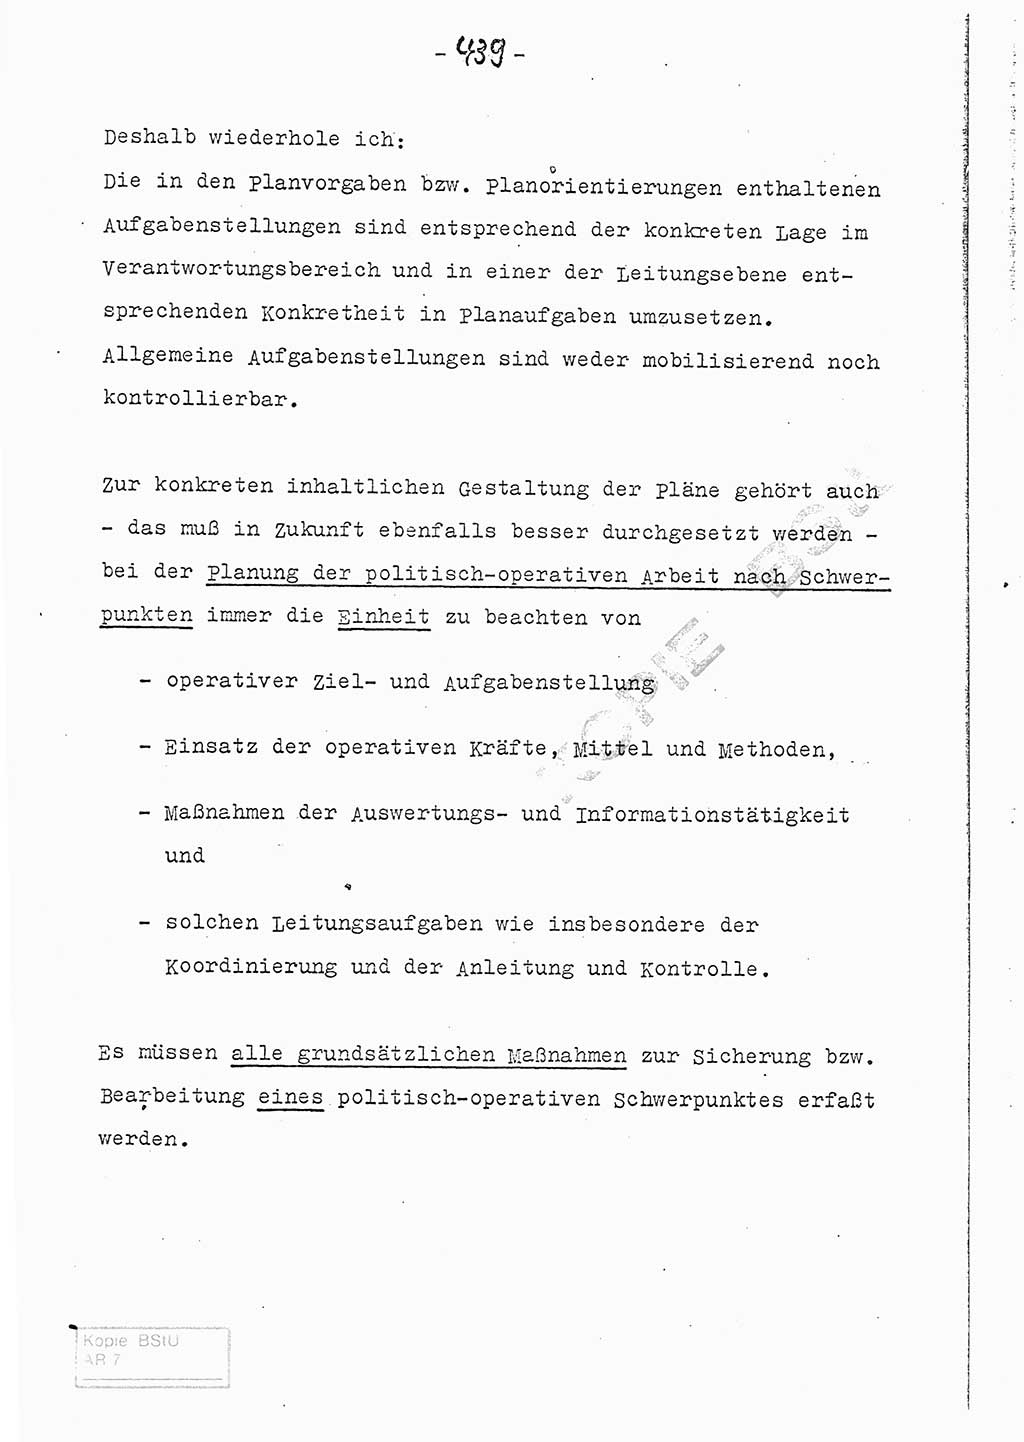 Referat (Entwurf) des Genossen Minister (Generaloberst Erich Mielke) auf der Dienstkonferenz 1972, Ministerium für Staatssicherheit (MfS) [Deutsche Demokratische Republik (DDR)], Der Minister, Geheime Verschlußsache (GVS) 008-150/72, Berlin 25.2.1972, Seite 439 (Ref. Entw. DK MfS DDR Min. GVS 008-150/72 1972, S. 439)